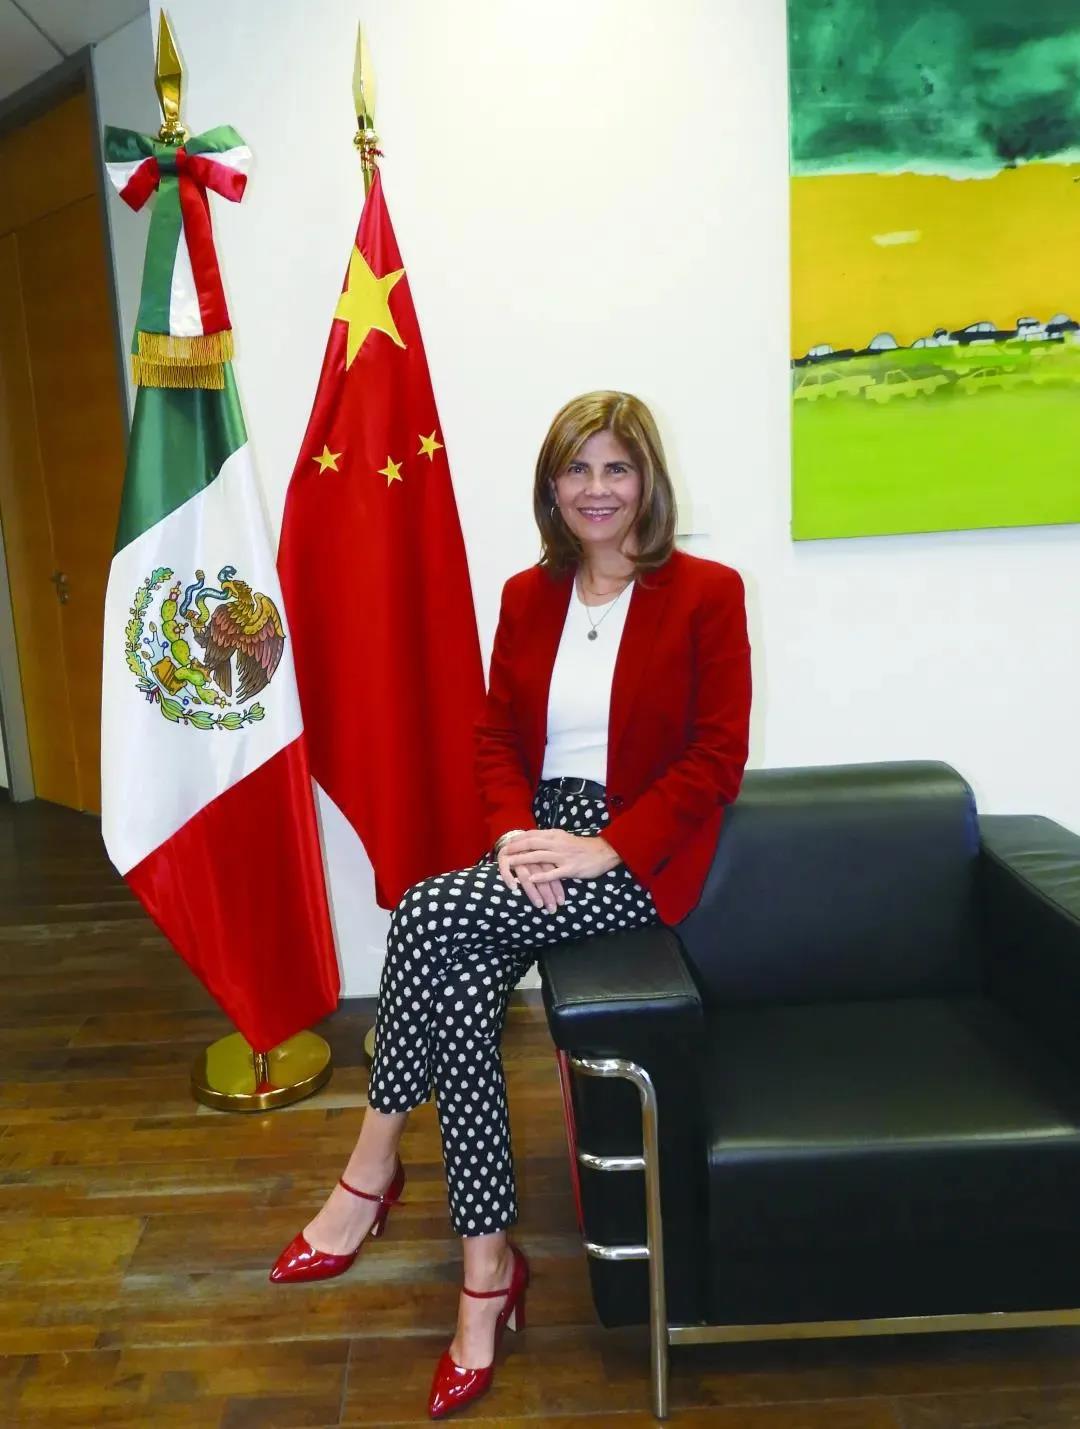 【中墨关系】让中国了解一个全面的墨西哥——墨西哥驻上海总领事柳若兰女士(Lorena Larios Rodríguez)访谈录